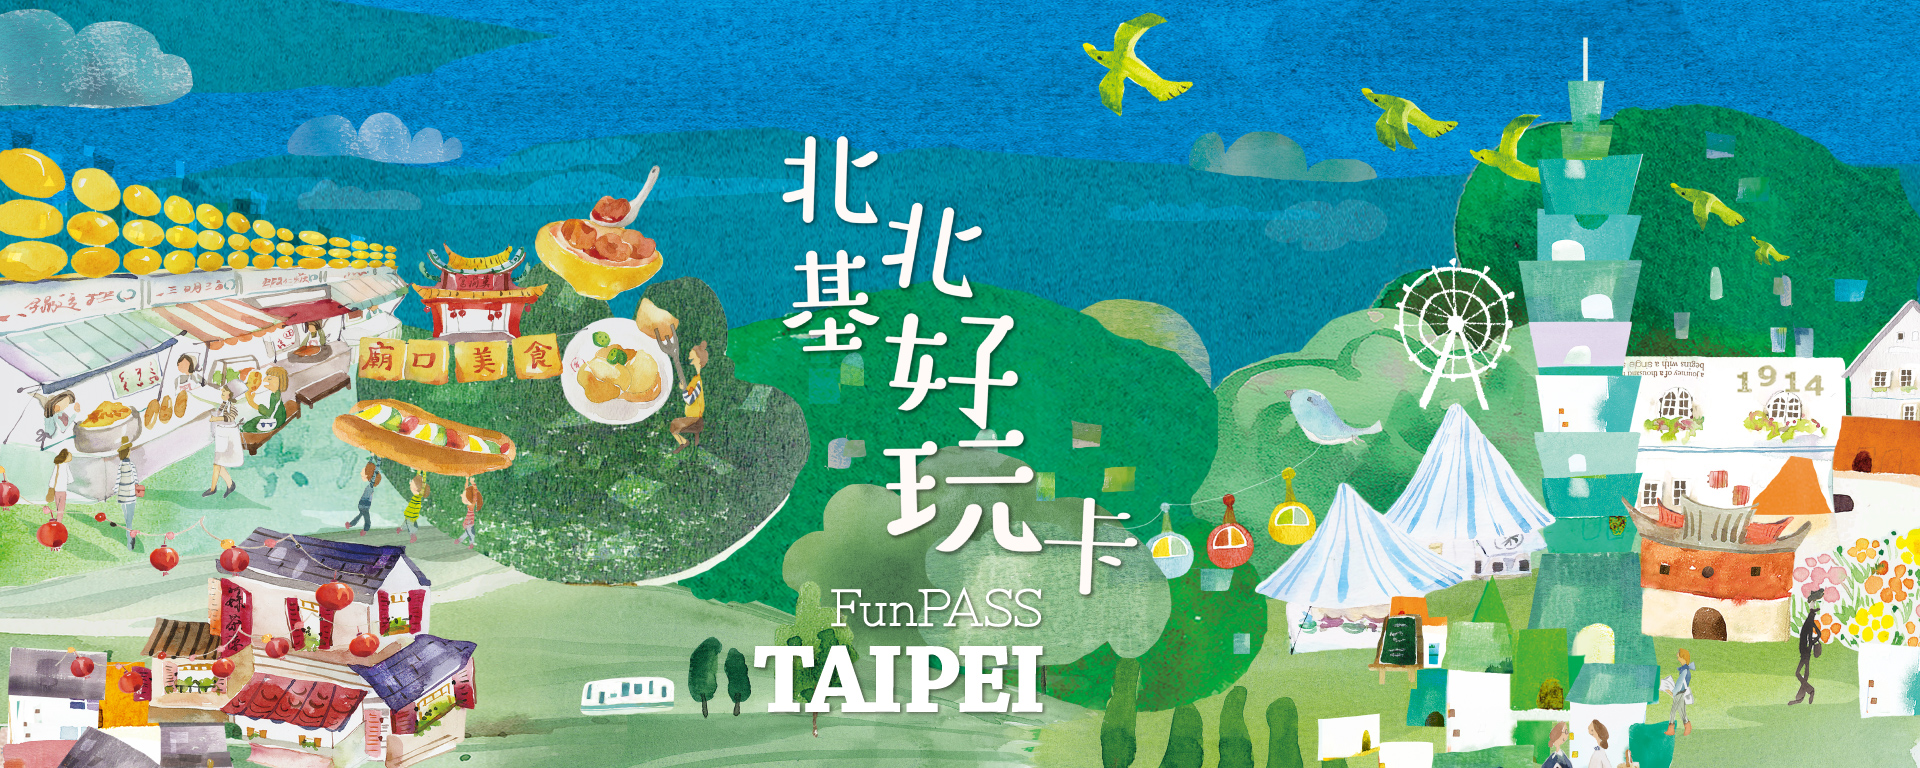 北北基好玩卡Taipei FunPASS-暢遊大台北週邊旅遊景點、交通、活動體驗